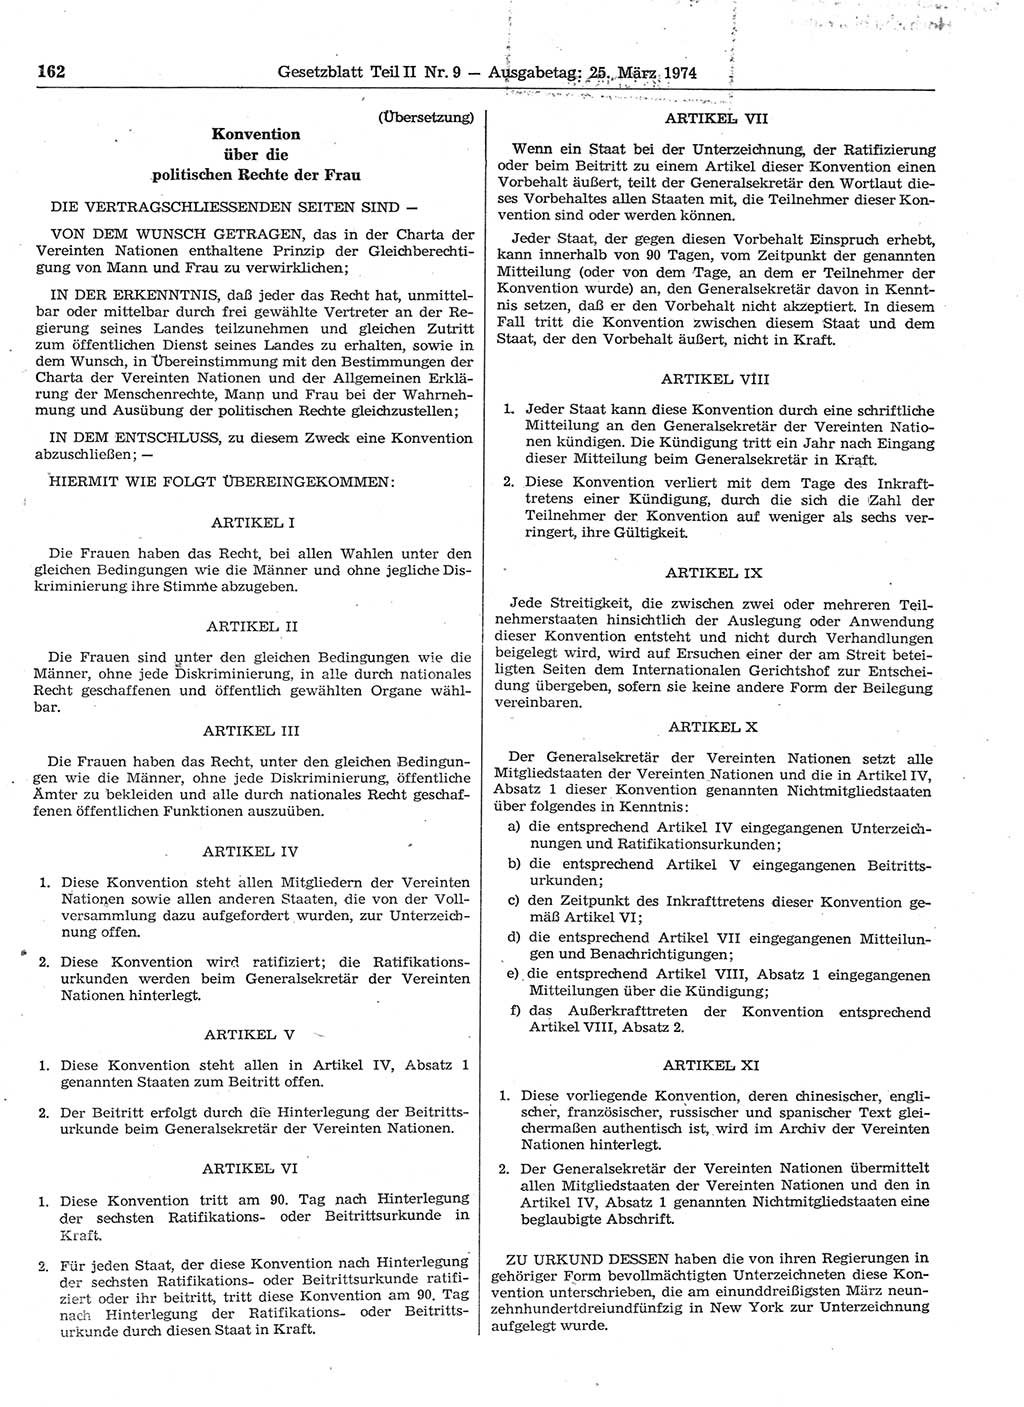 Gesetzblatt (GBl.) der Deutschen Demokratischen Republik (DDR) Teil ⅠⅠ 1974, Seite 162 (GBl. DDR ⅠⅠ 1974, S. 162)